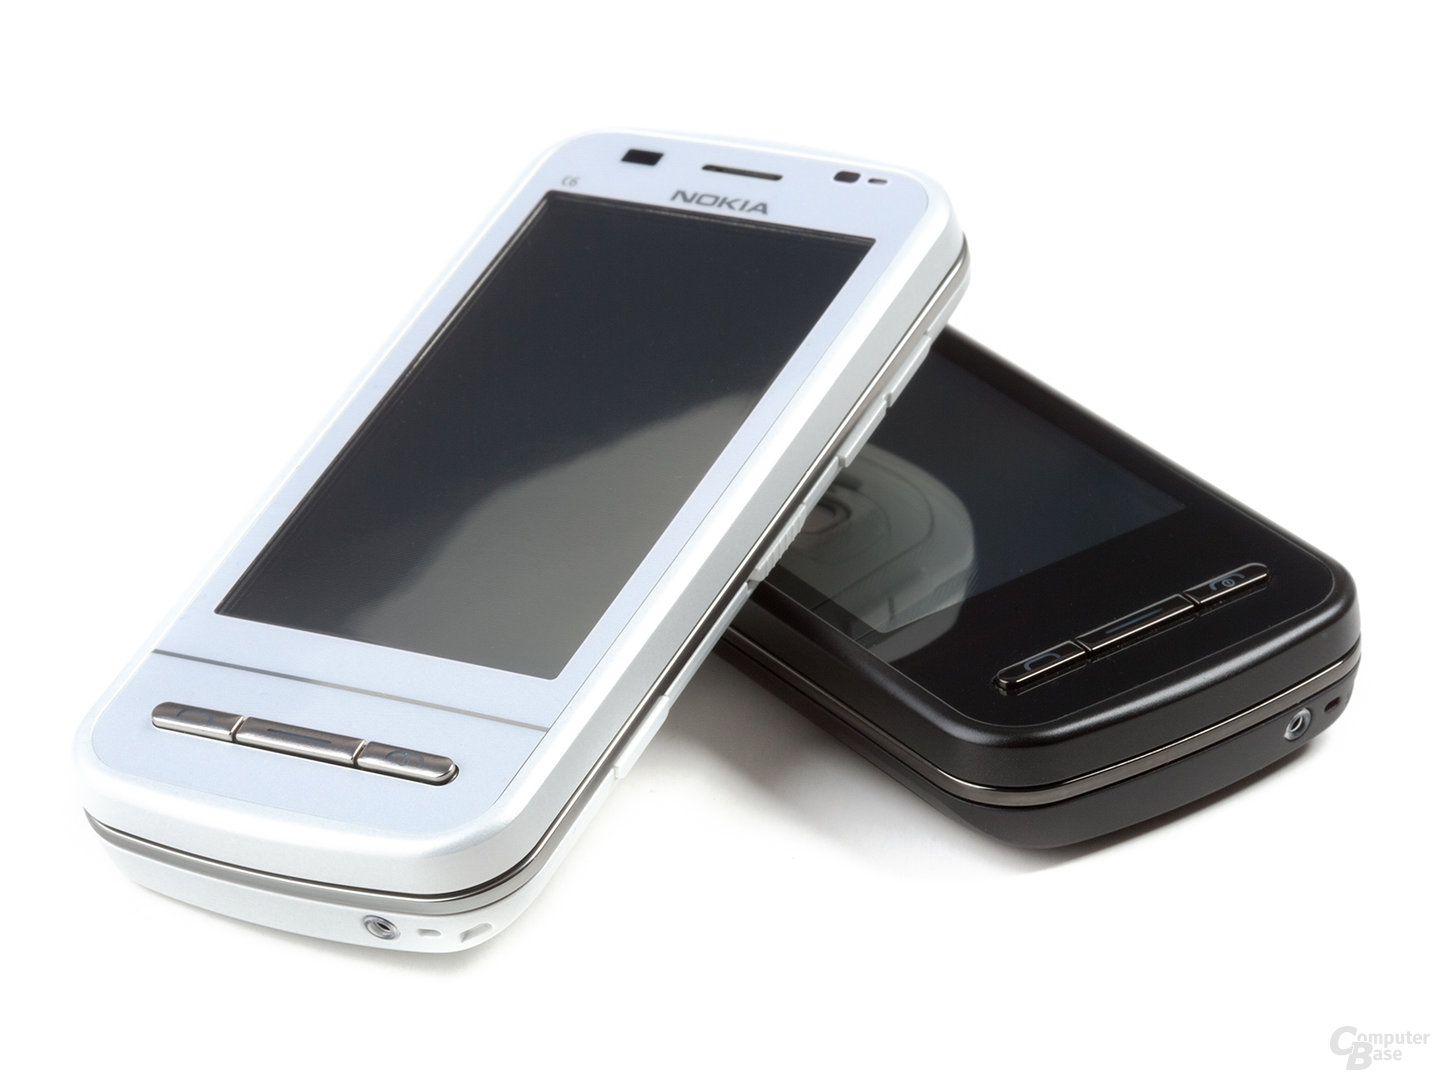 Nokia C6-00 in Schwarz und Weiß